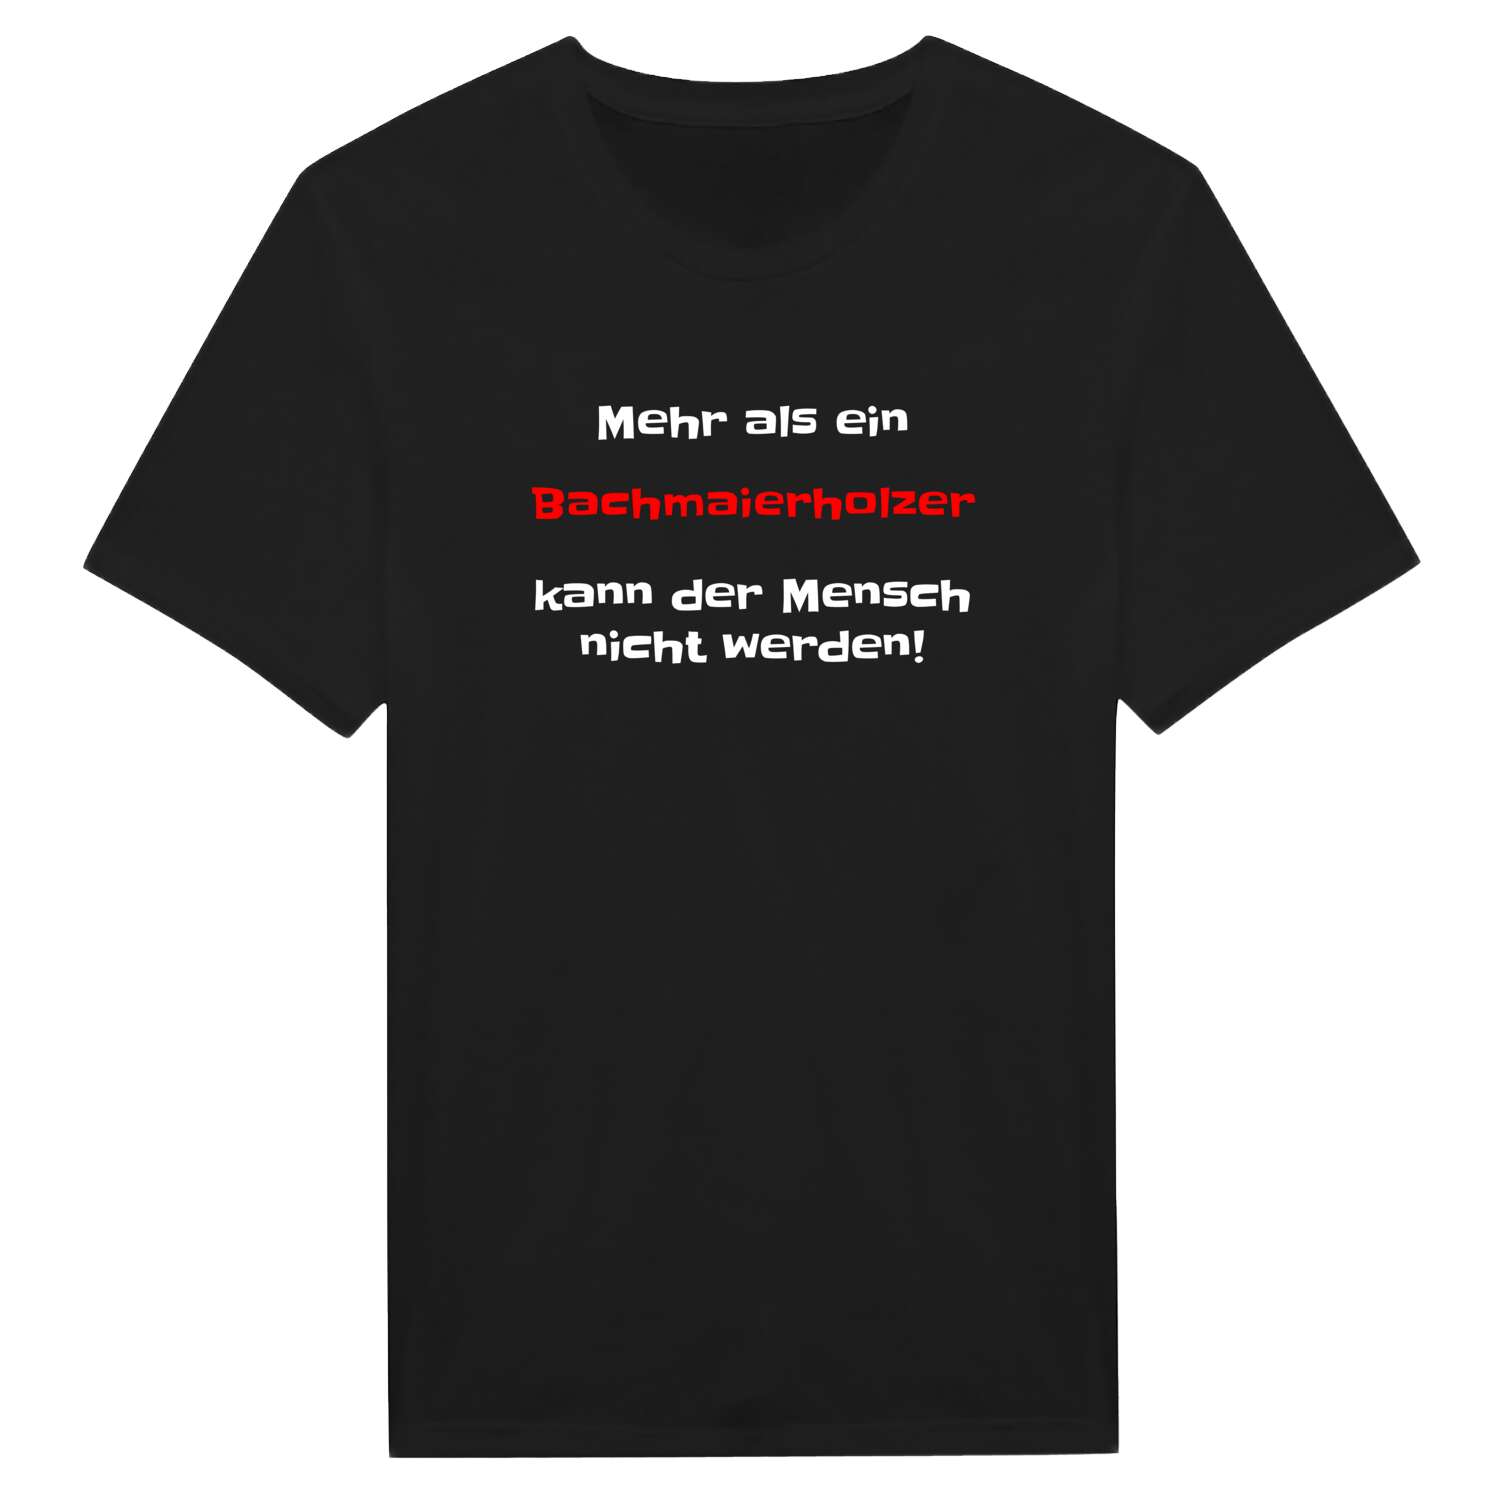 Bachmaierholz T-Shirt »Mehr als ein«